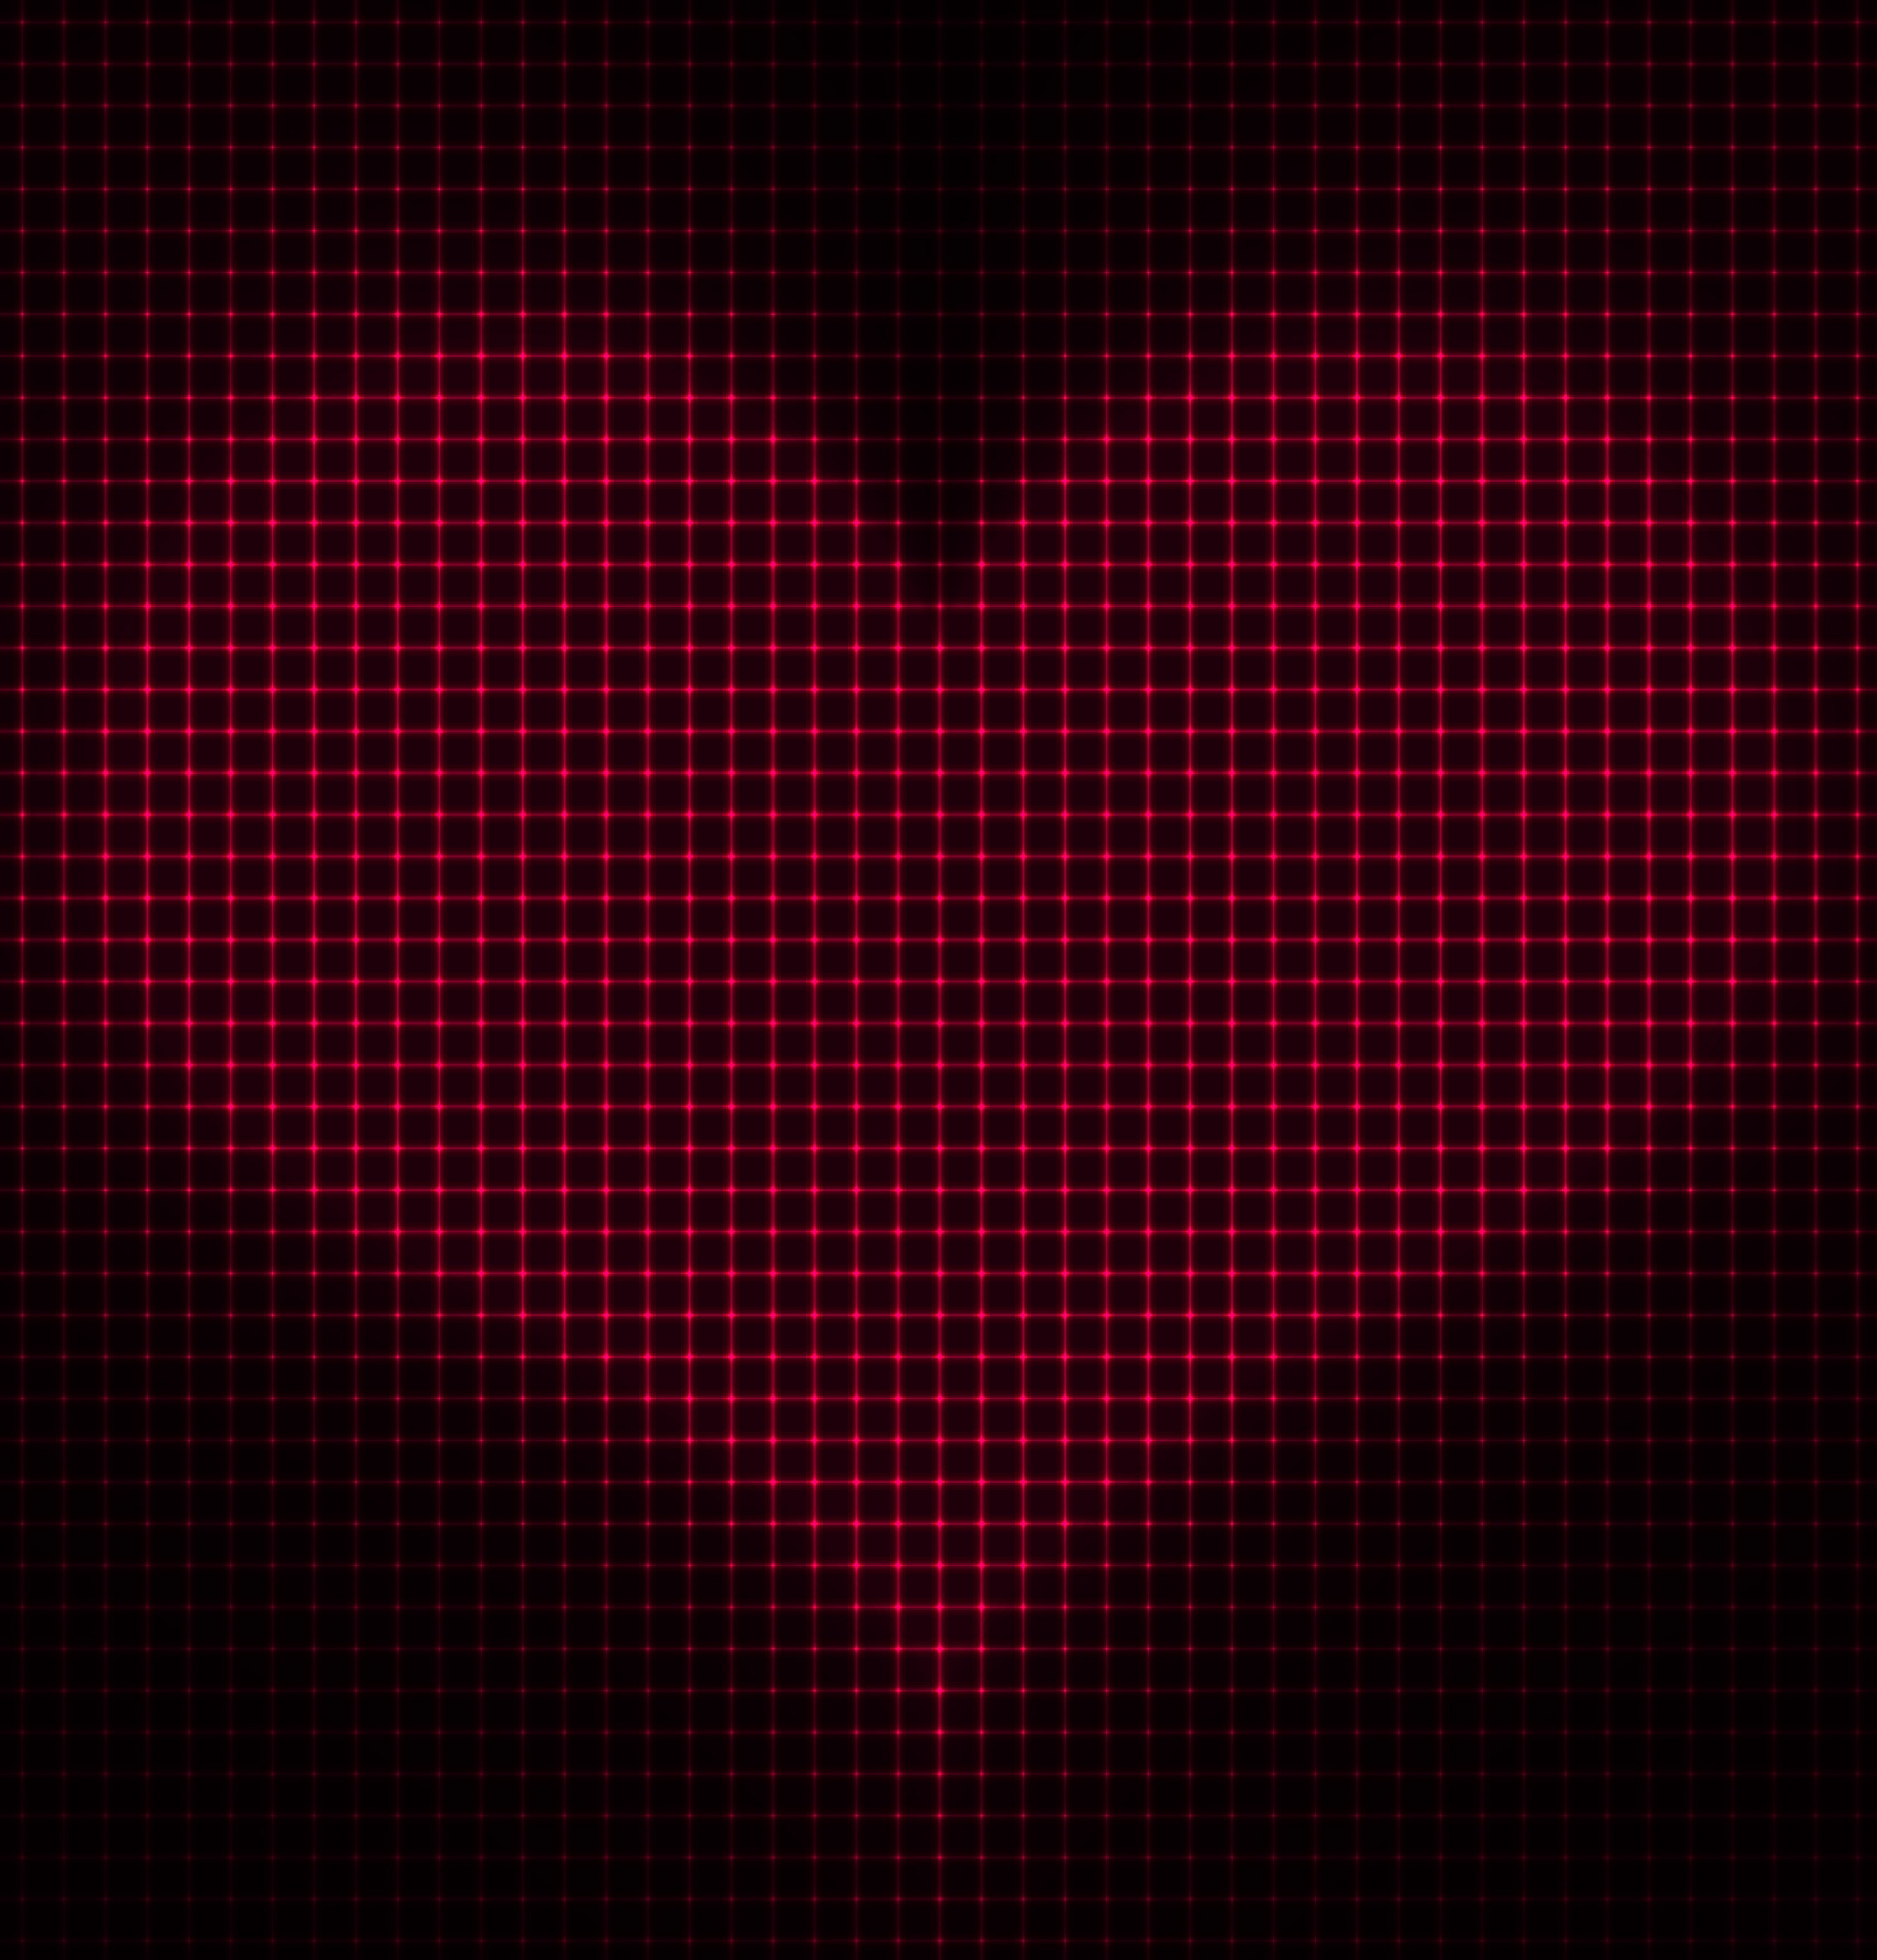 Hãy tận hưởng một hình nền trái tim đỏ đen miễn phí đầy lãng mạn! Bạn sẽ bị cuốn hút bởi đường cong mềm mại và những mảng màu tuyệt đẹp. Nhấn play để nhận quà ngay hôm nay!